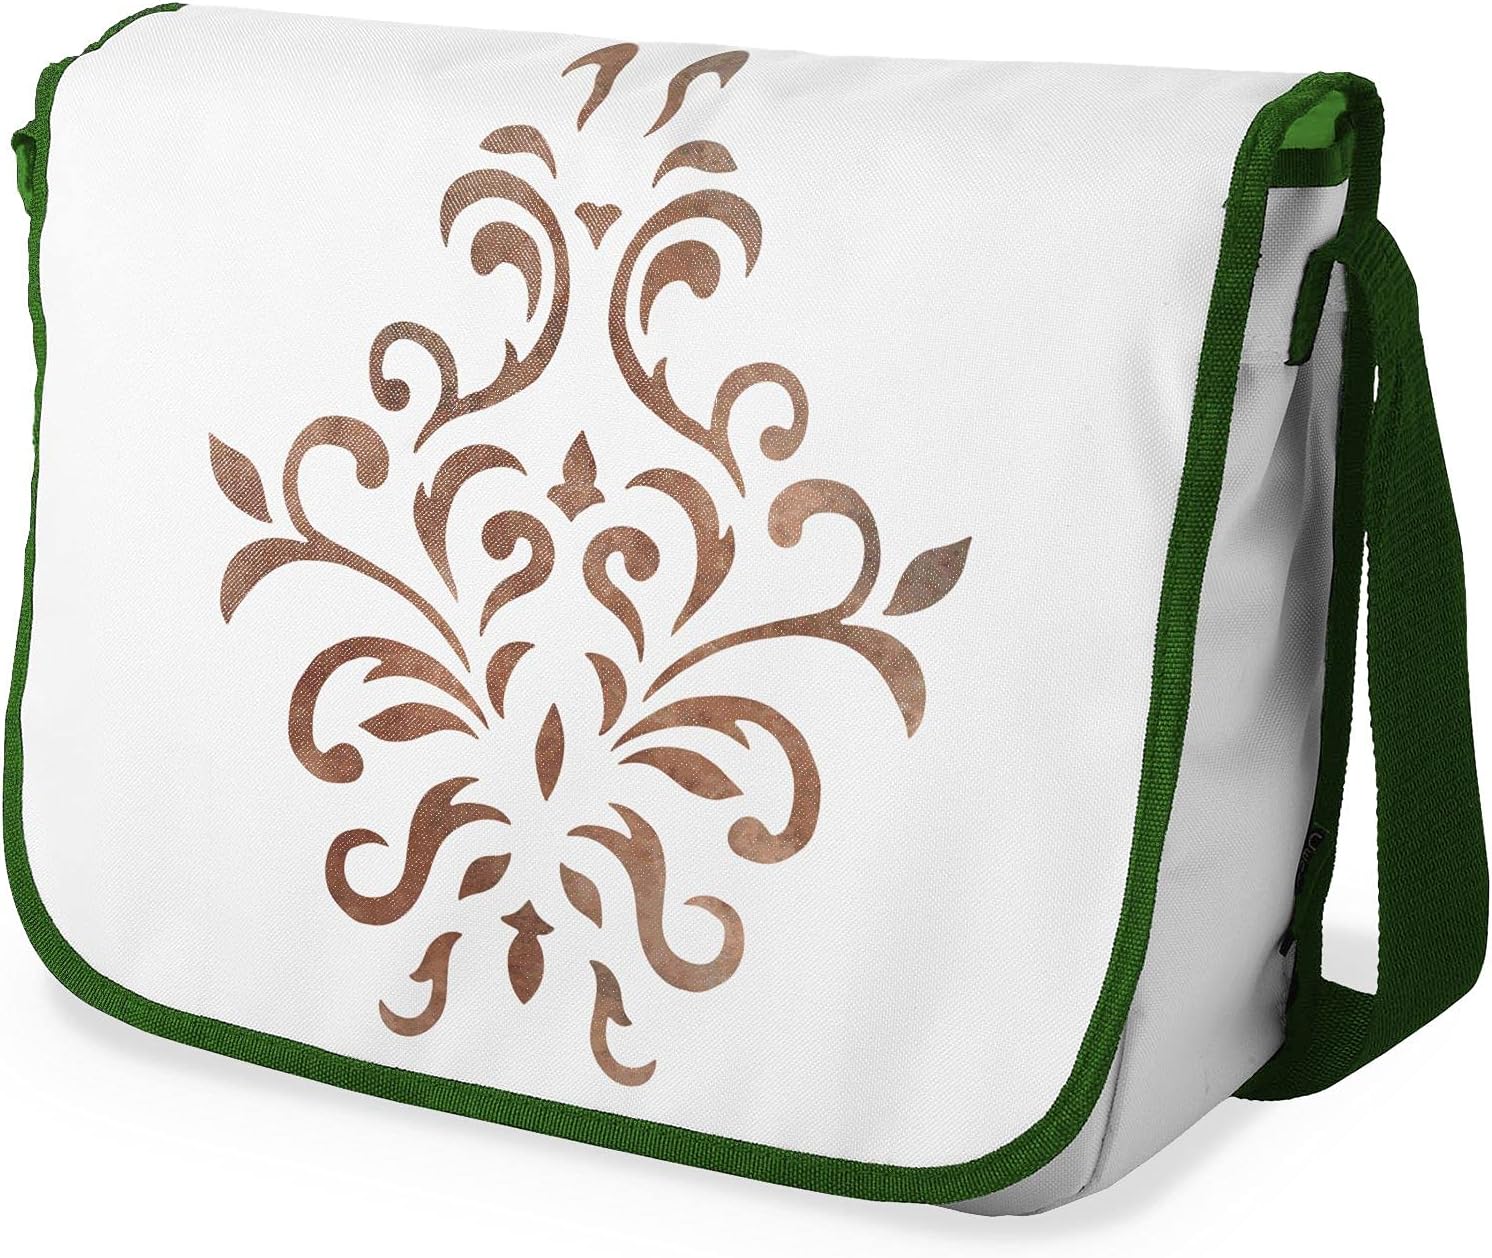 Bonamaison Brown Tribal Pattern Messenger School Bag w/ Khaki Strap RRP £16.91 CLEARANCE XL £9.99